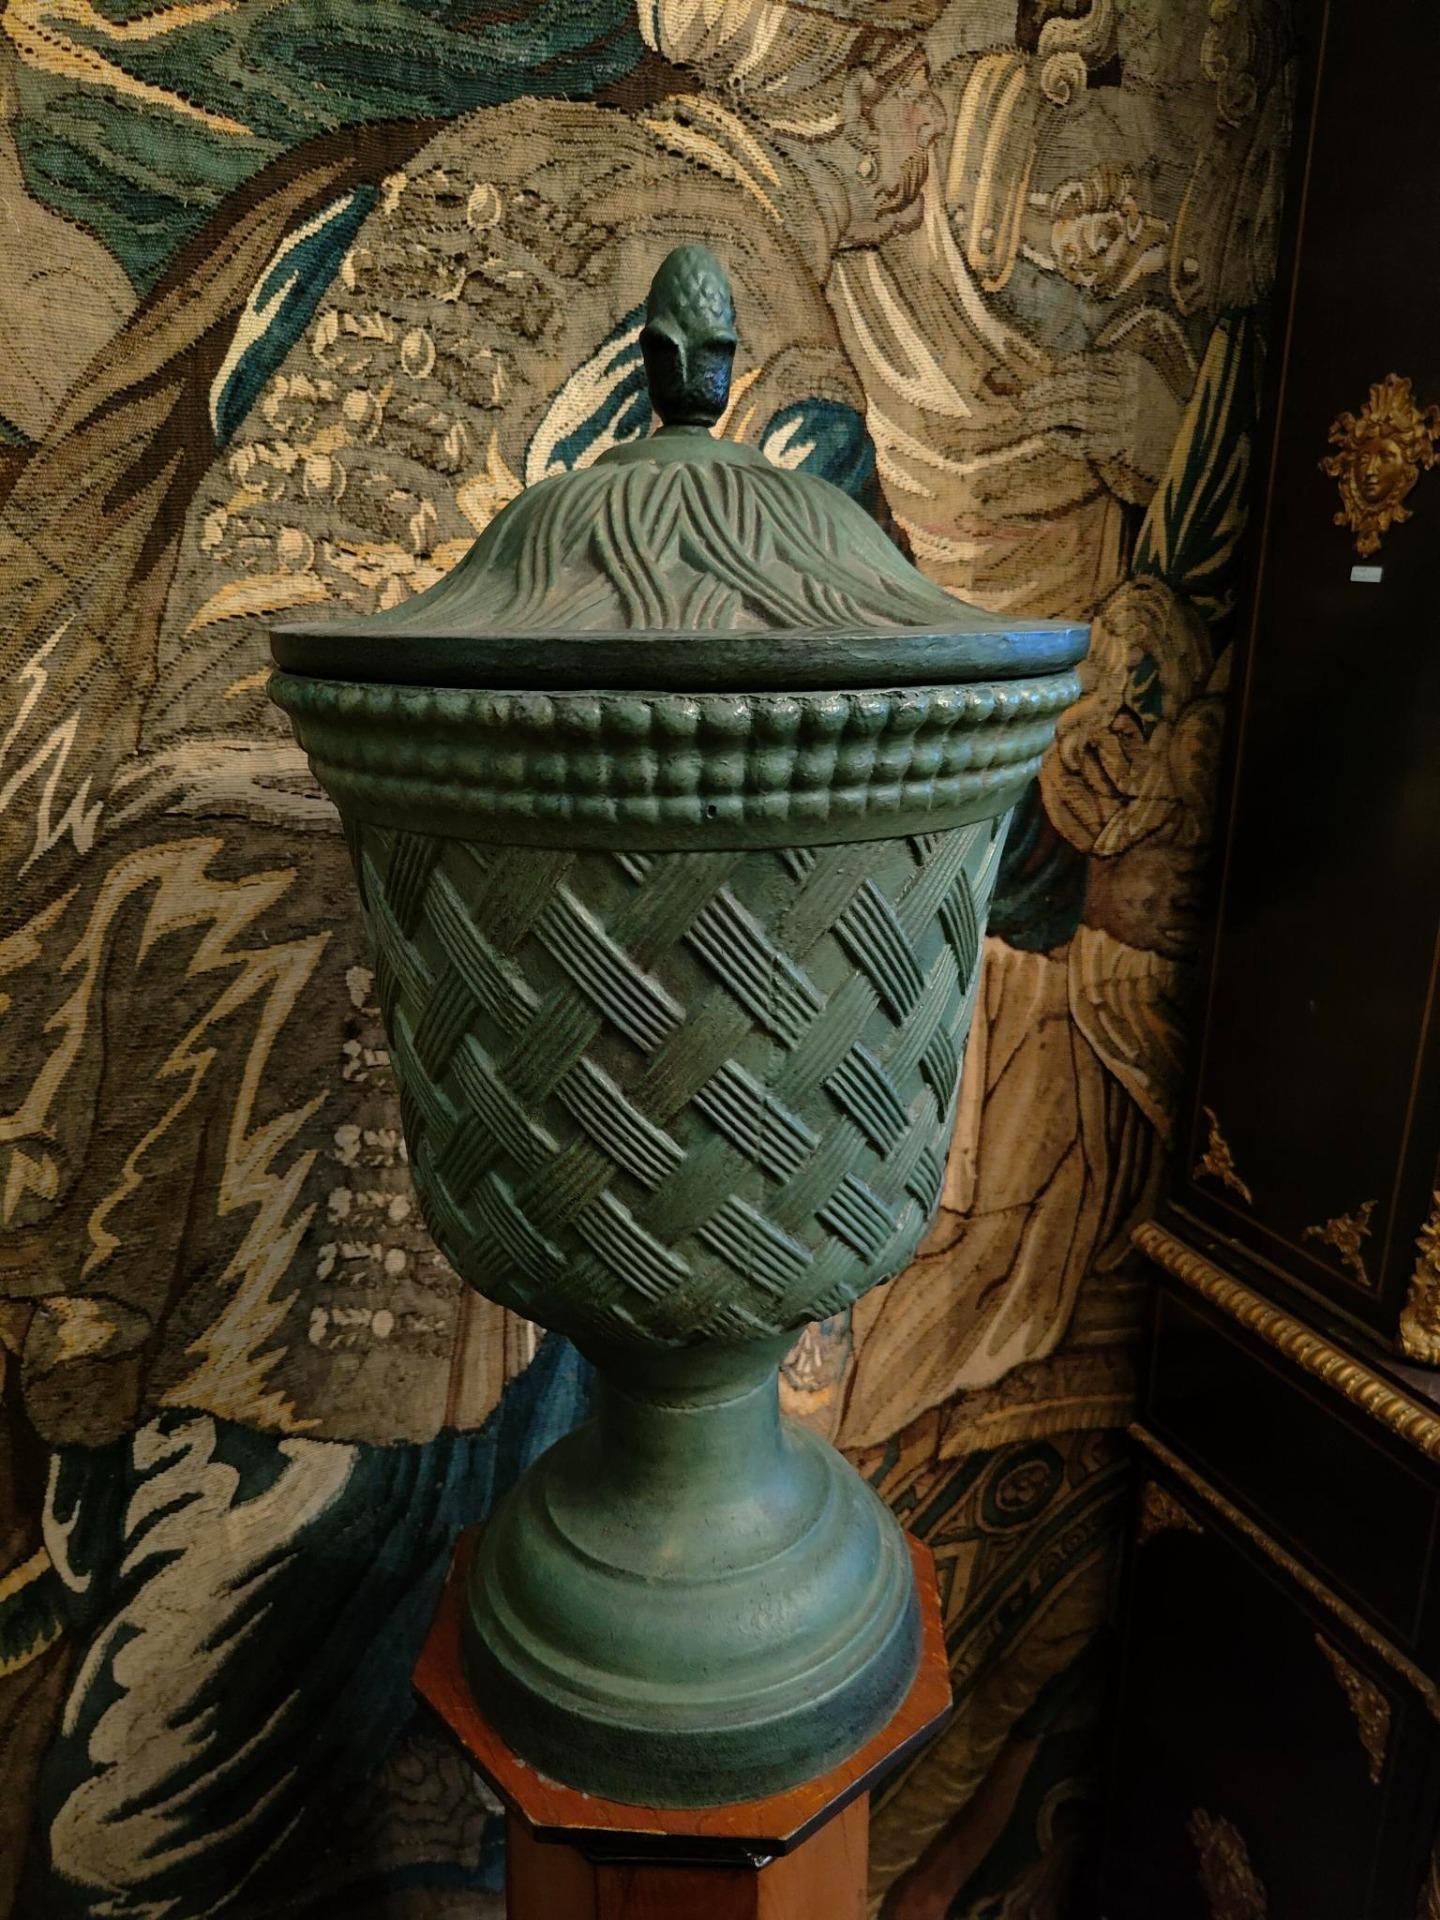 Belle paire de vases en fonte avec couvercles, soutenus par deux colonnes en bois.
Dans le corps des vases et le couvercle, le dessin imite une trame que l'on trouve habituellement dans des objets d'une autre nature, une trame typique de matériaux